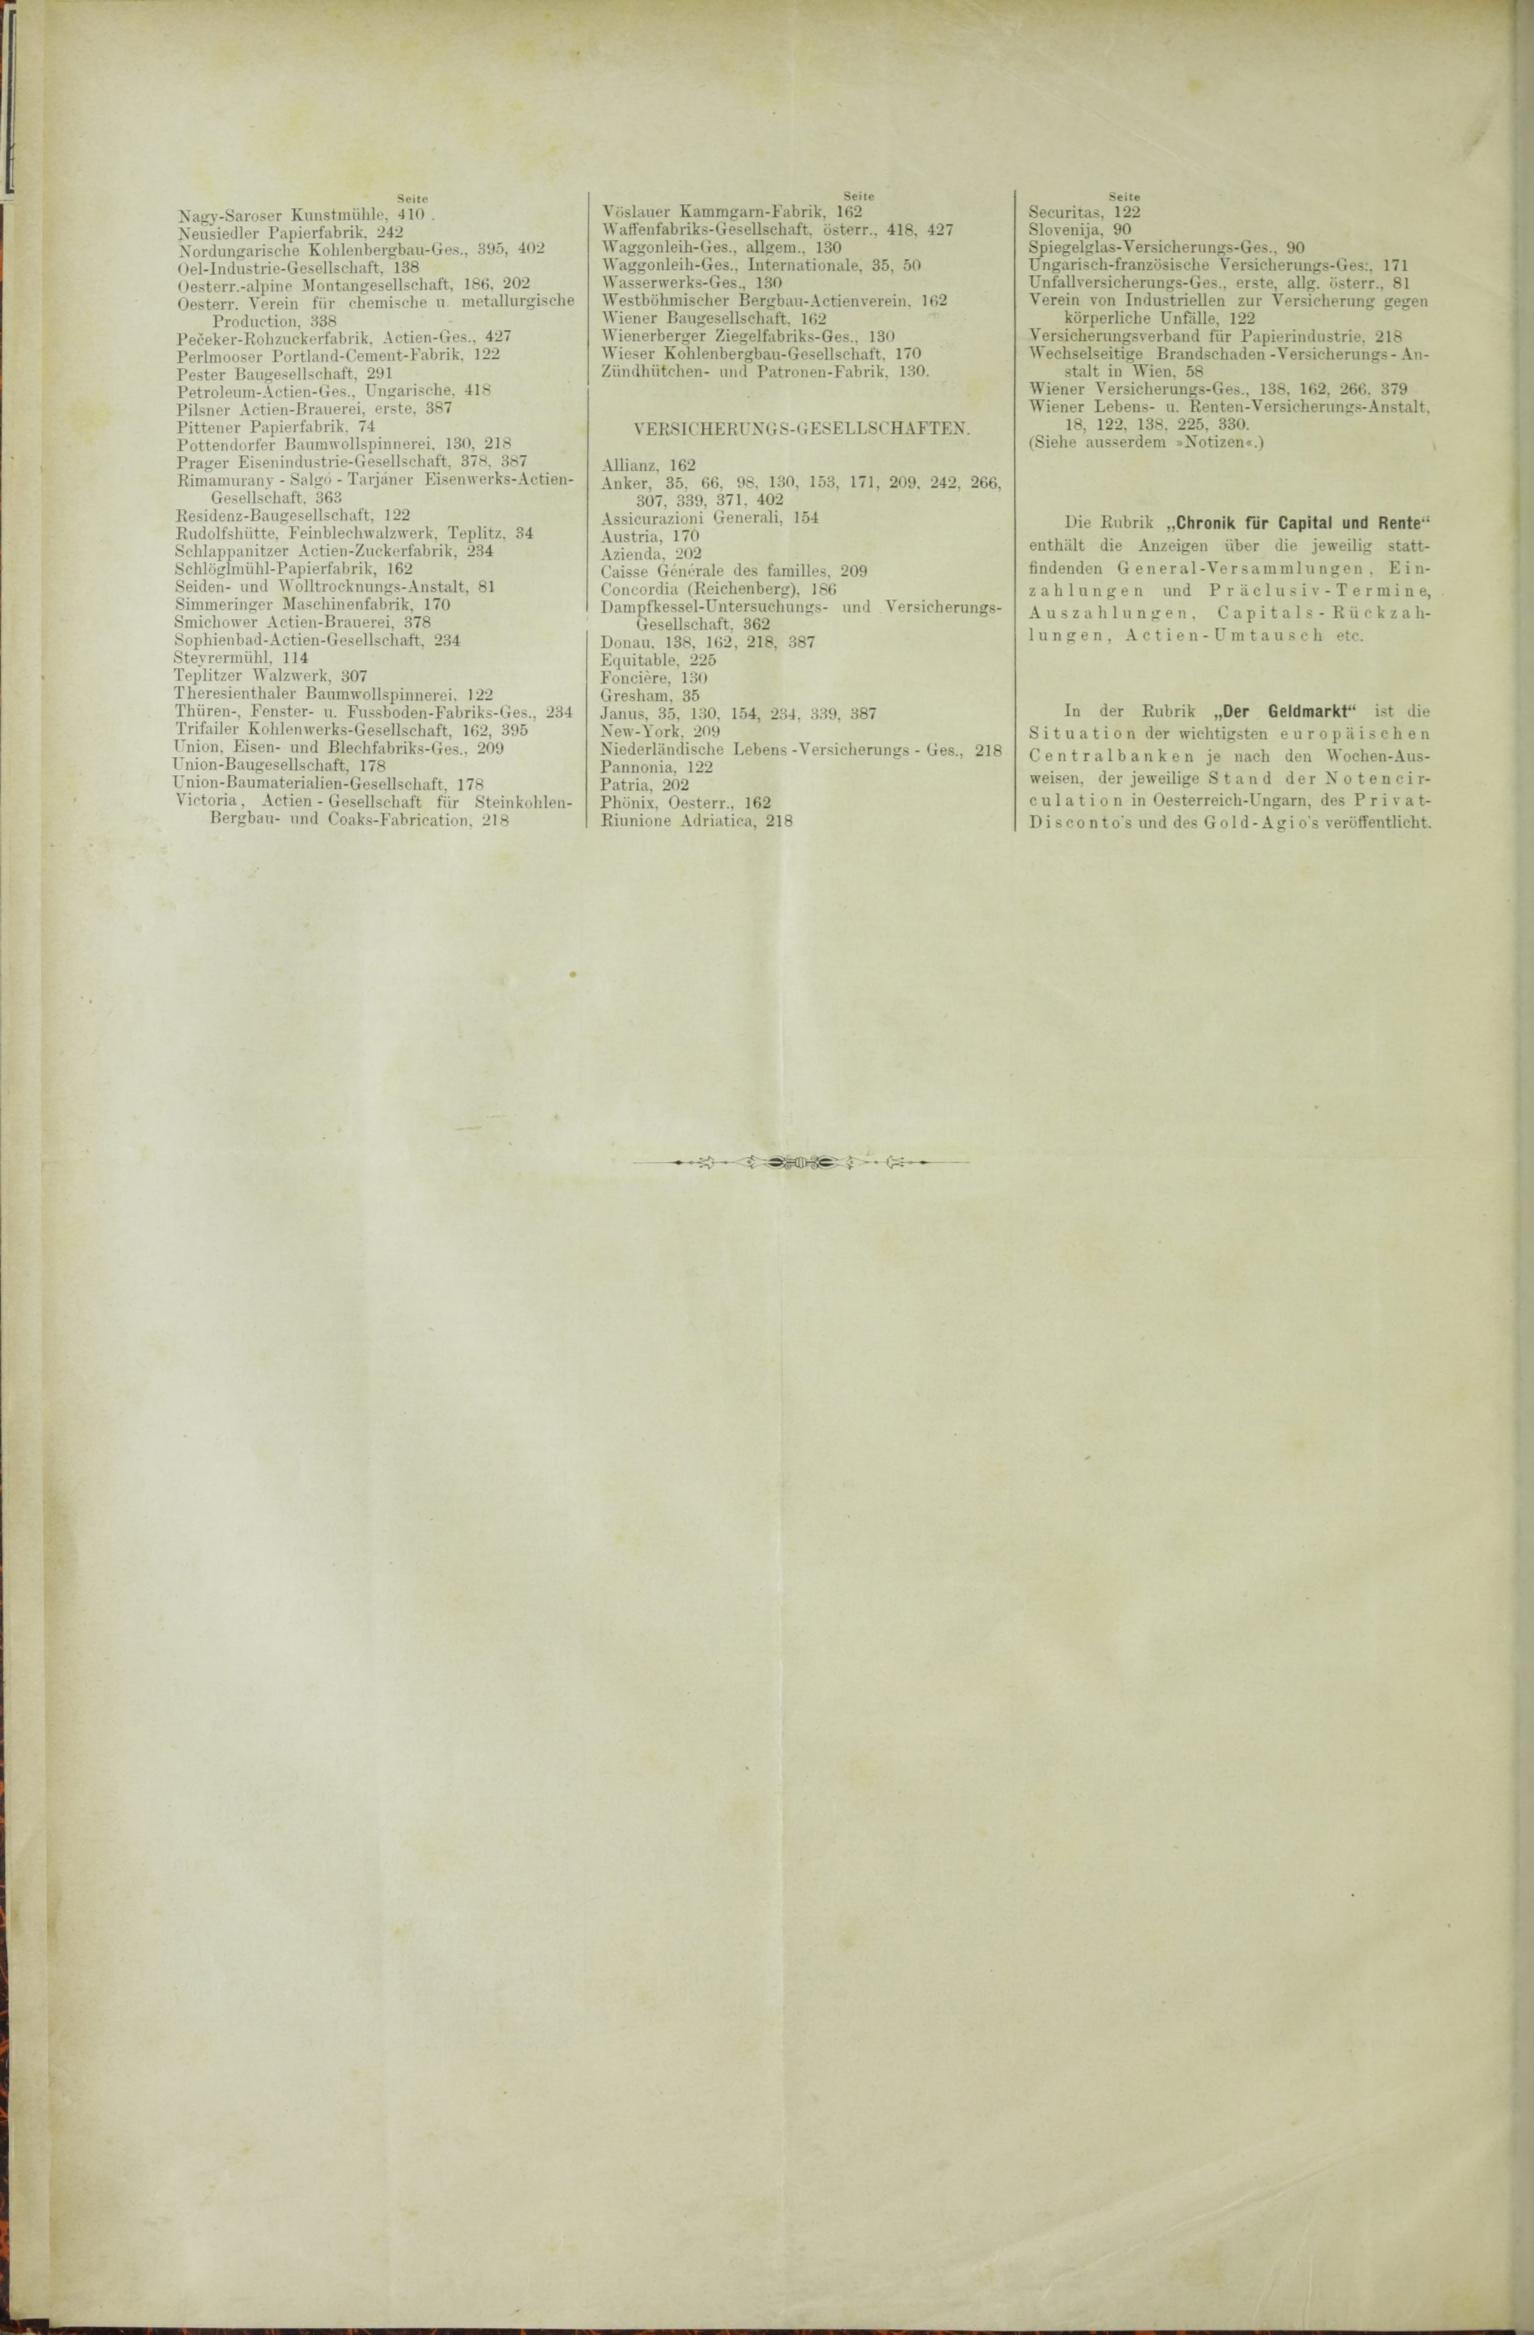 Der Tresor 03.12.1885 - Seite 12